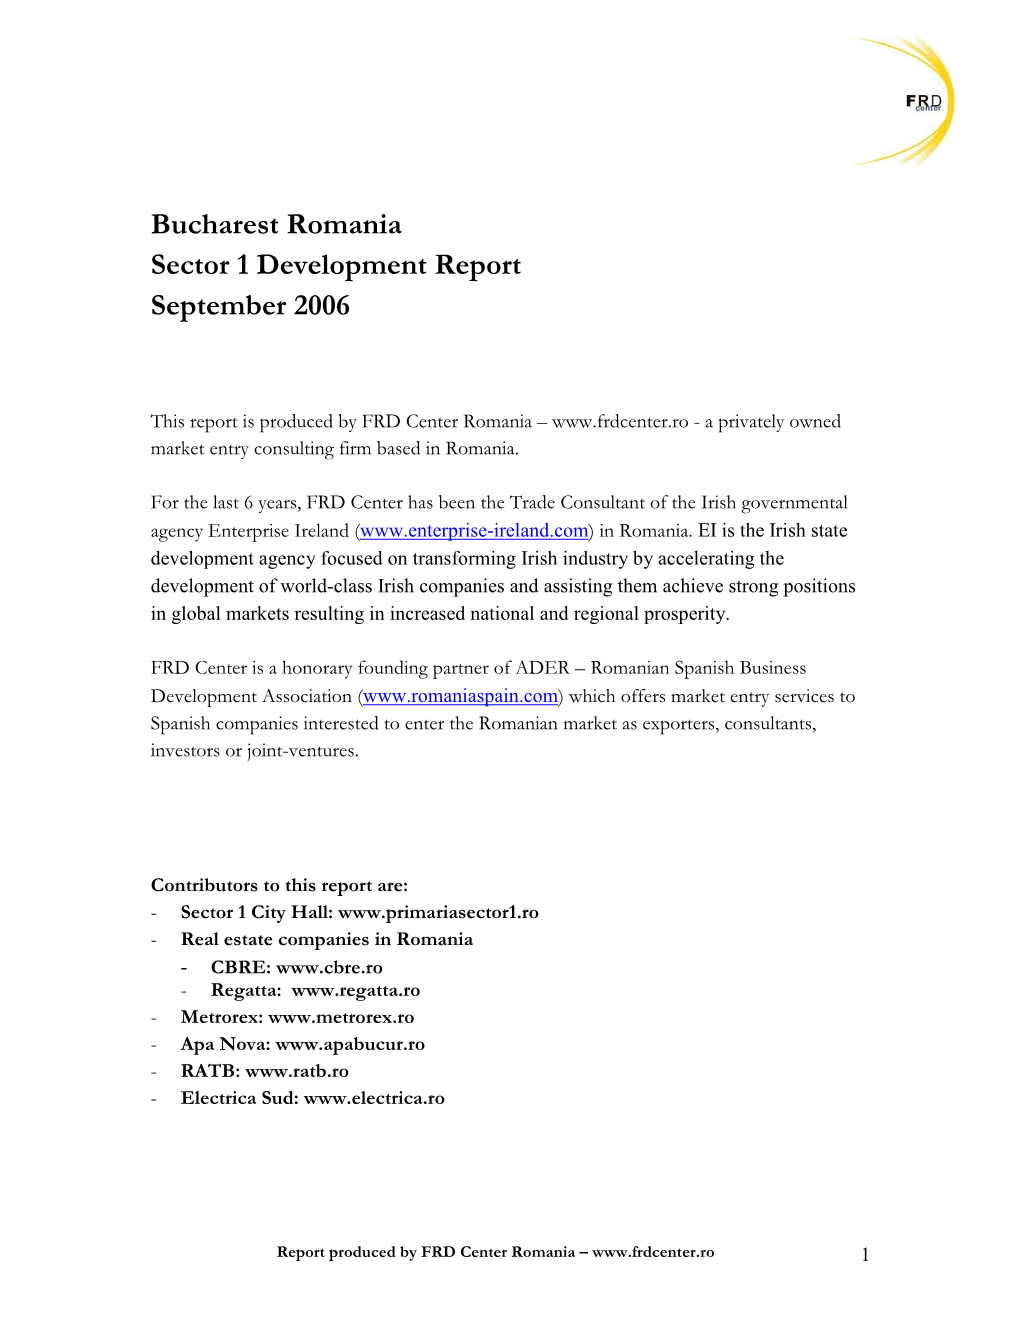 Bucharest Sector 1 Development Report